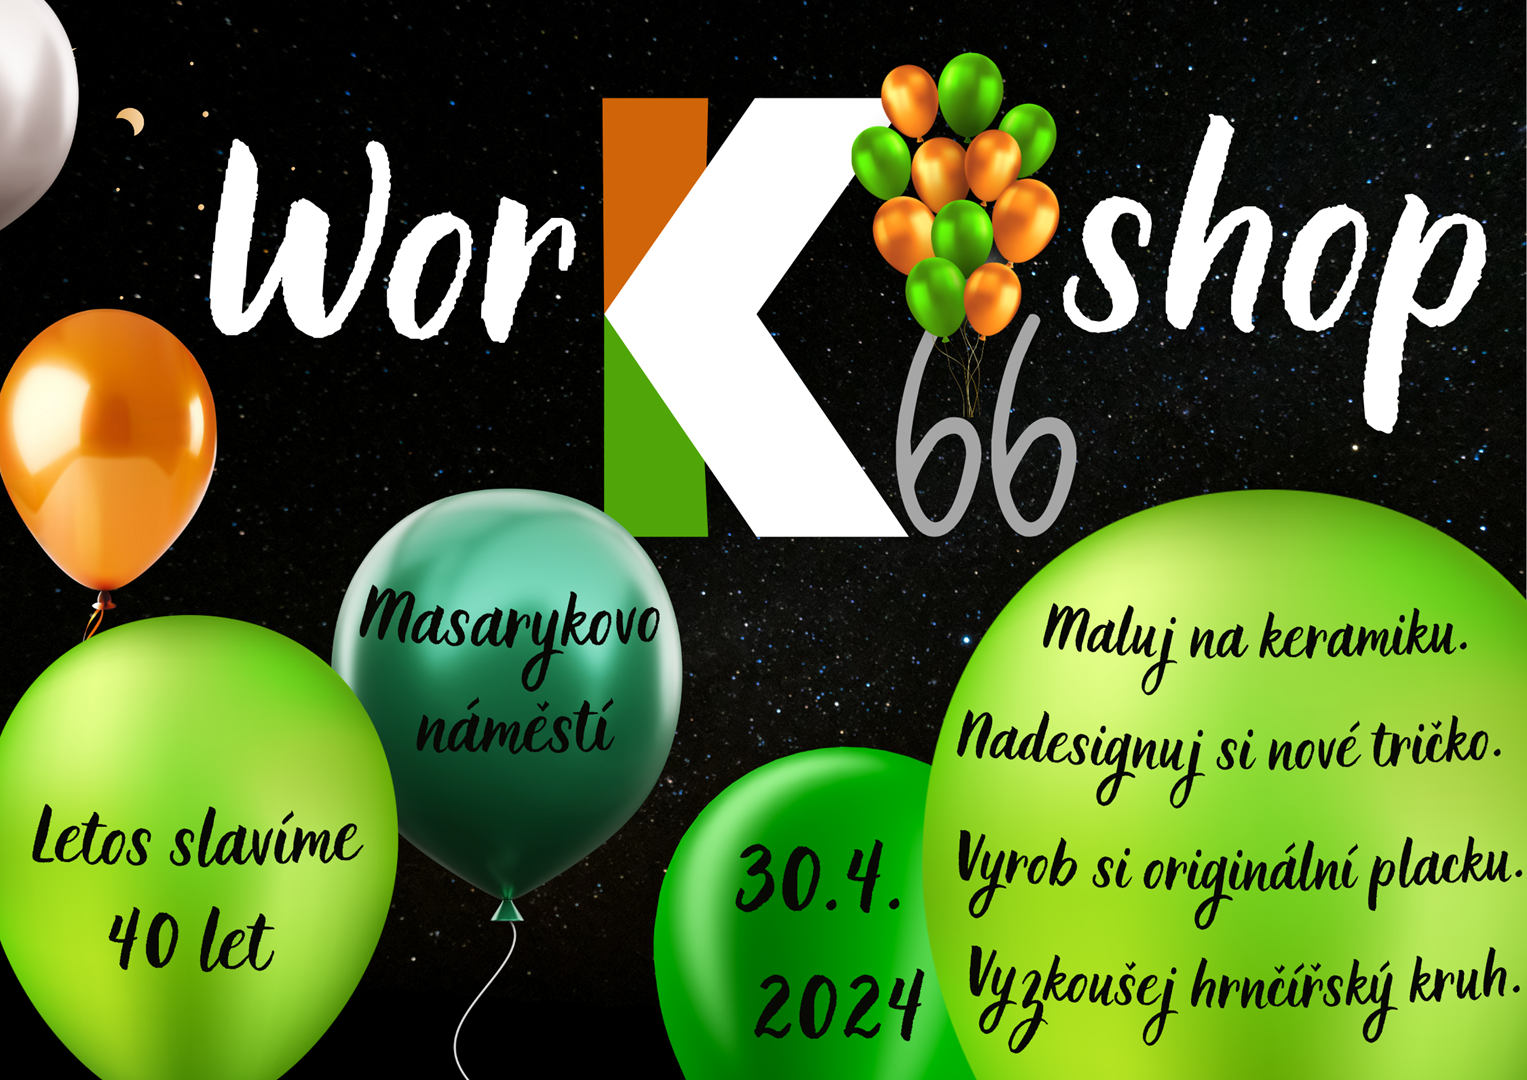 Čarodějnický WOR-K66-SHOP